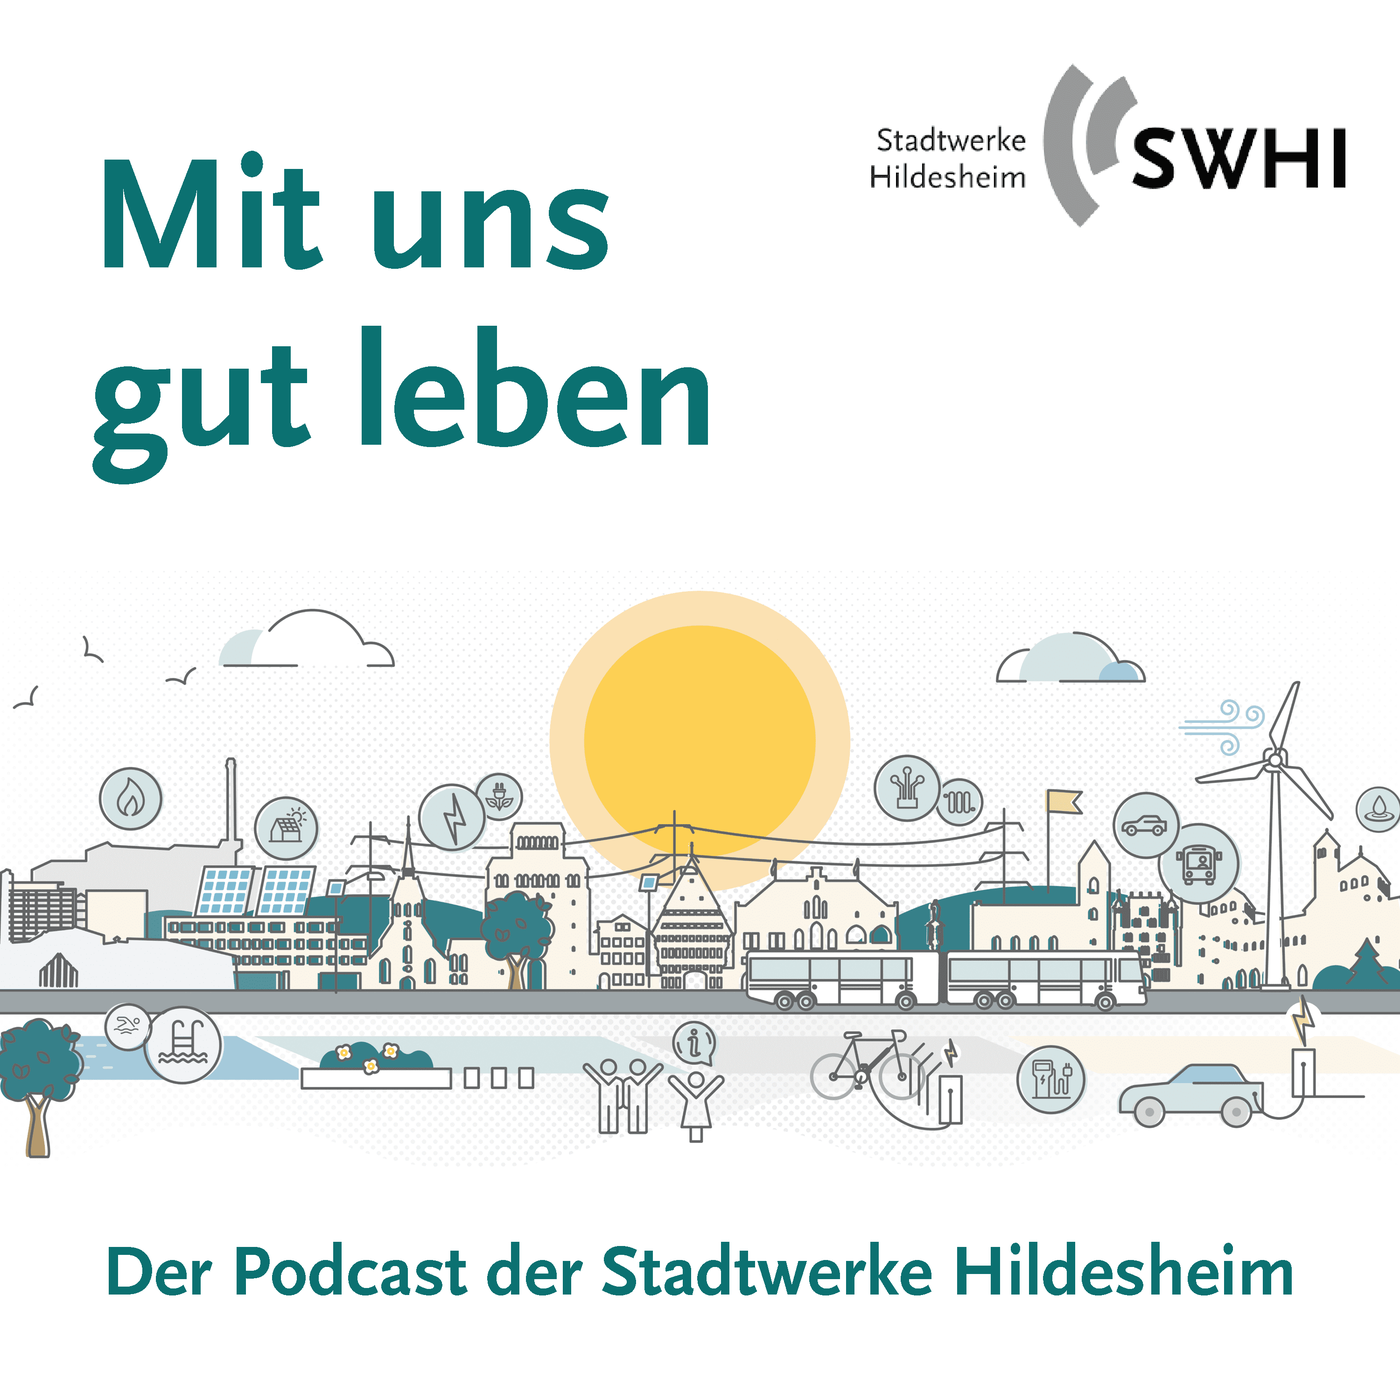 Mit uns gut leben - Der Podcast der Stadtwerke Hildesheim